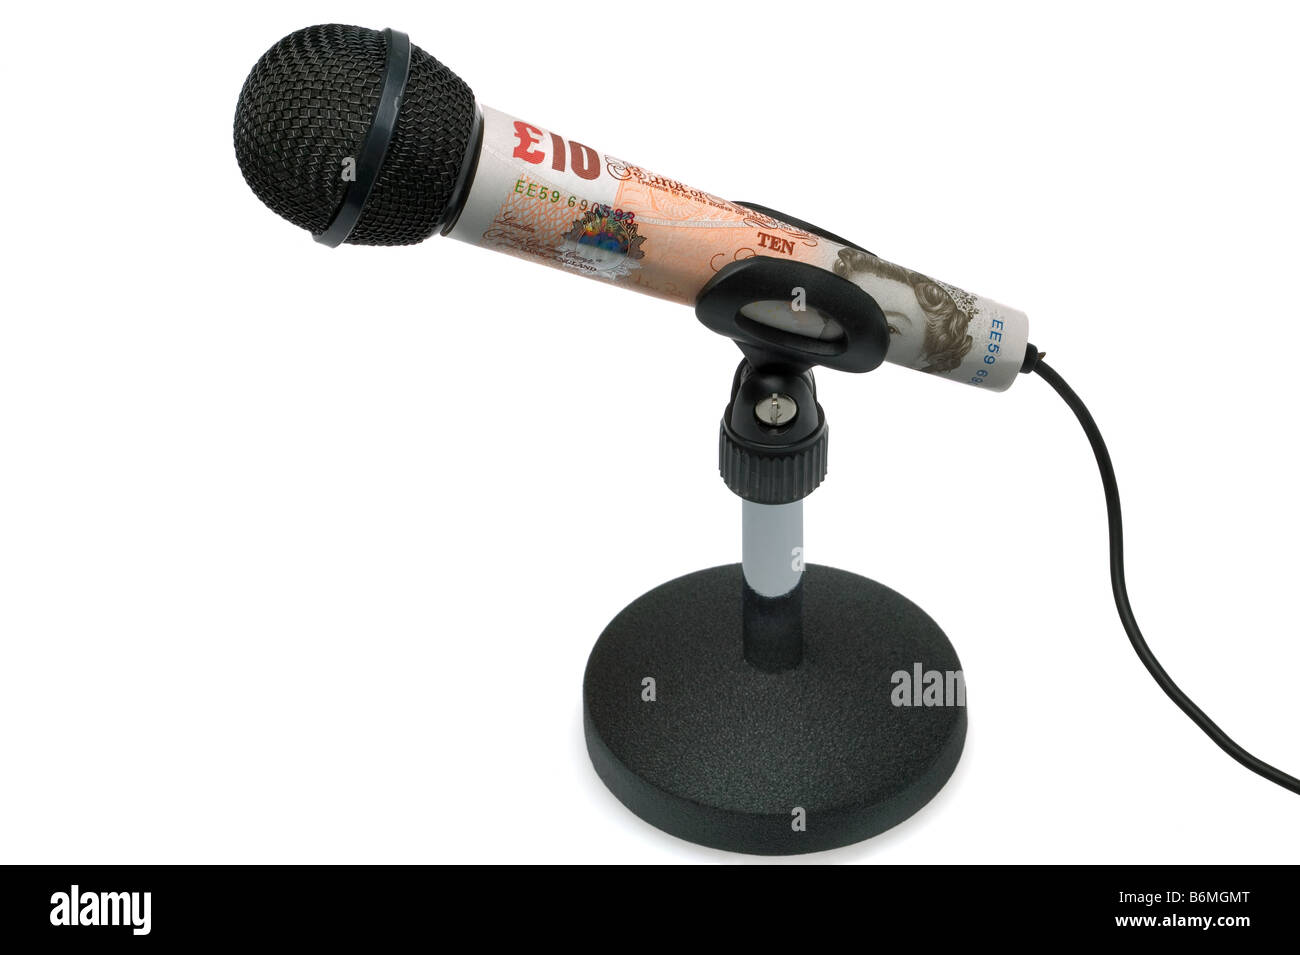 Geld spricht Konzept Bild von einer zehn-Pfund-Note um ein Tabletop Mikrofon isoliert auf weißem Hintergrund Stockfoto